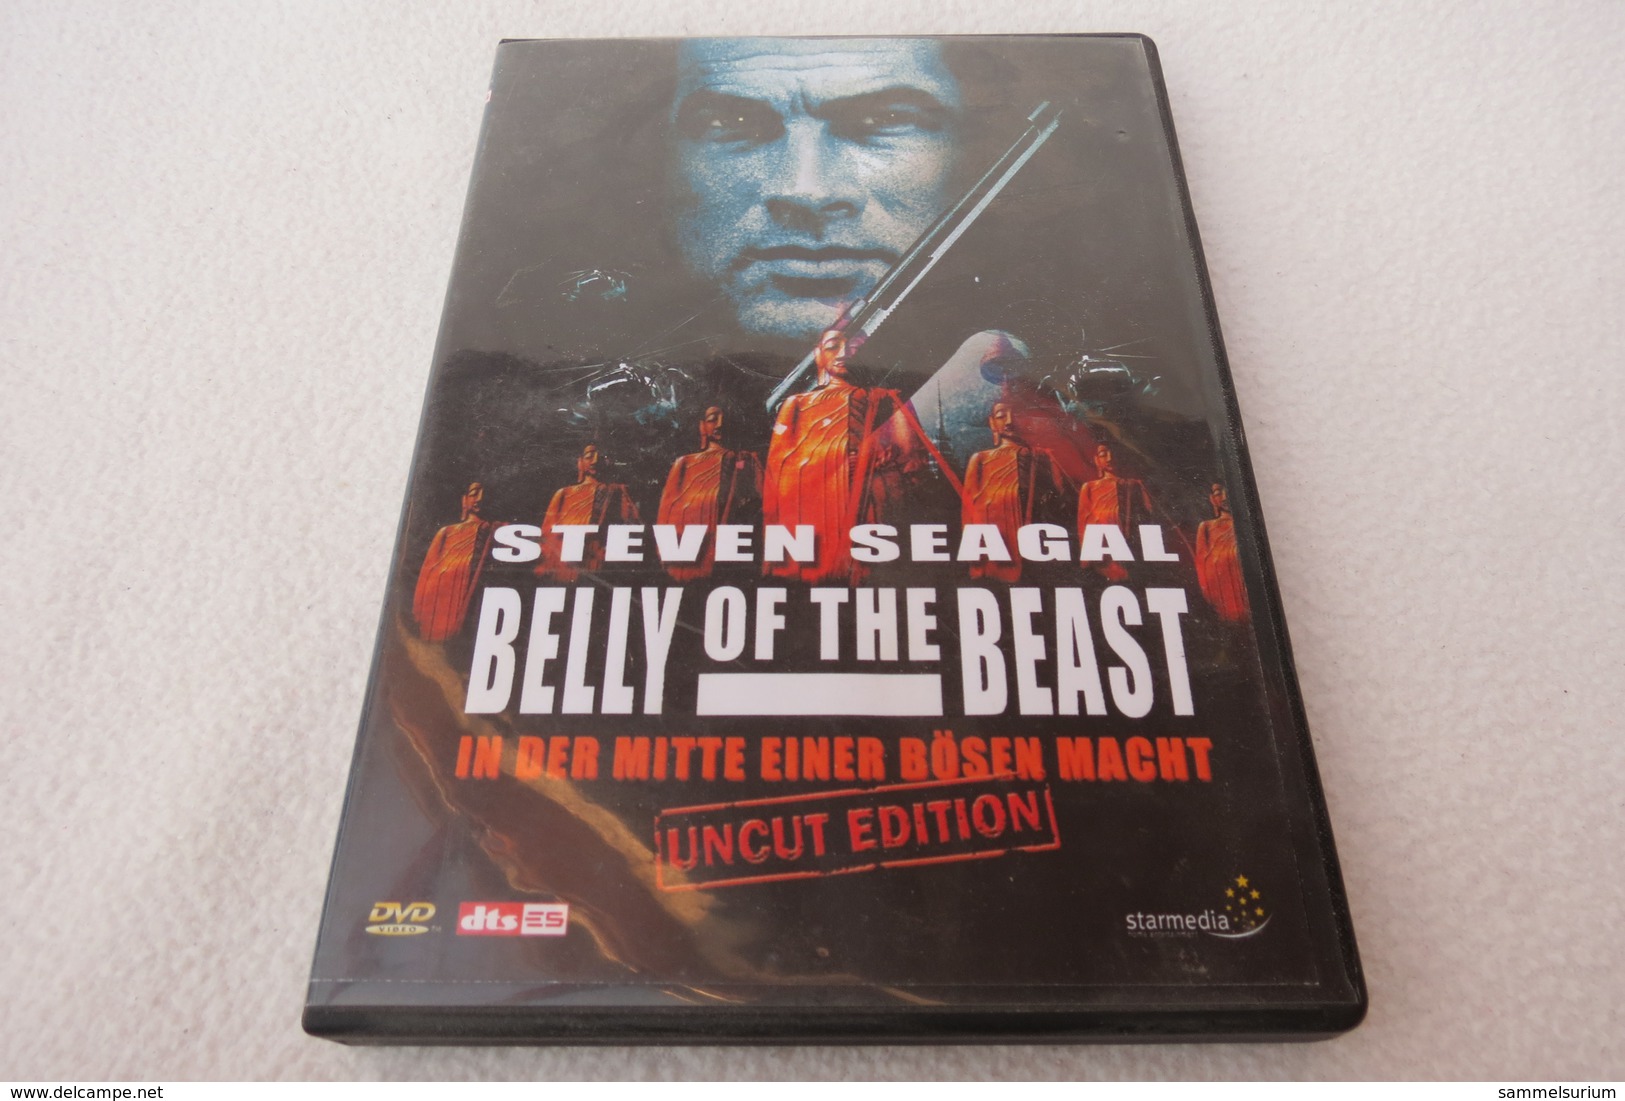 DVD "Belly Of The Beast" In Der Mitte Einer Bösen Macht (Uncut Edition) - Music On DVD